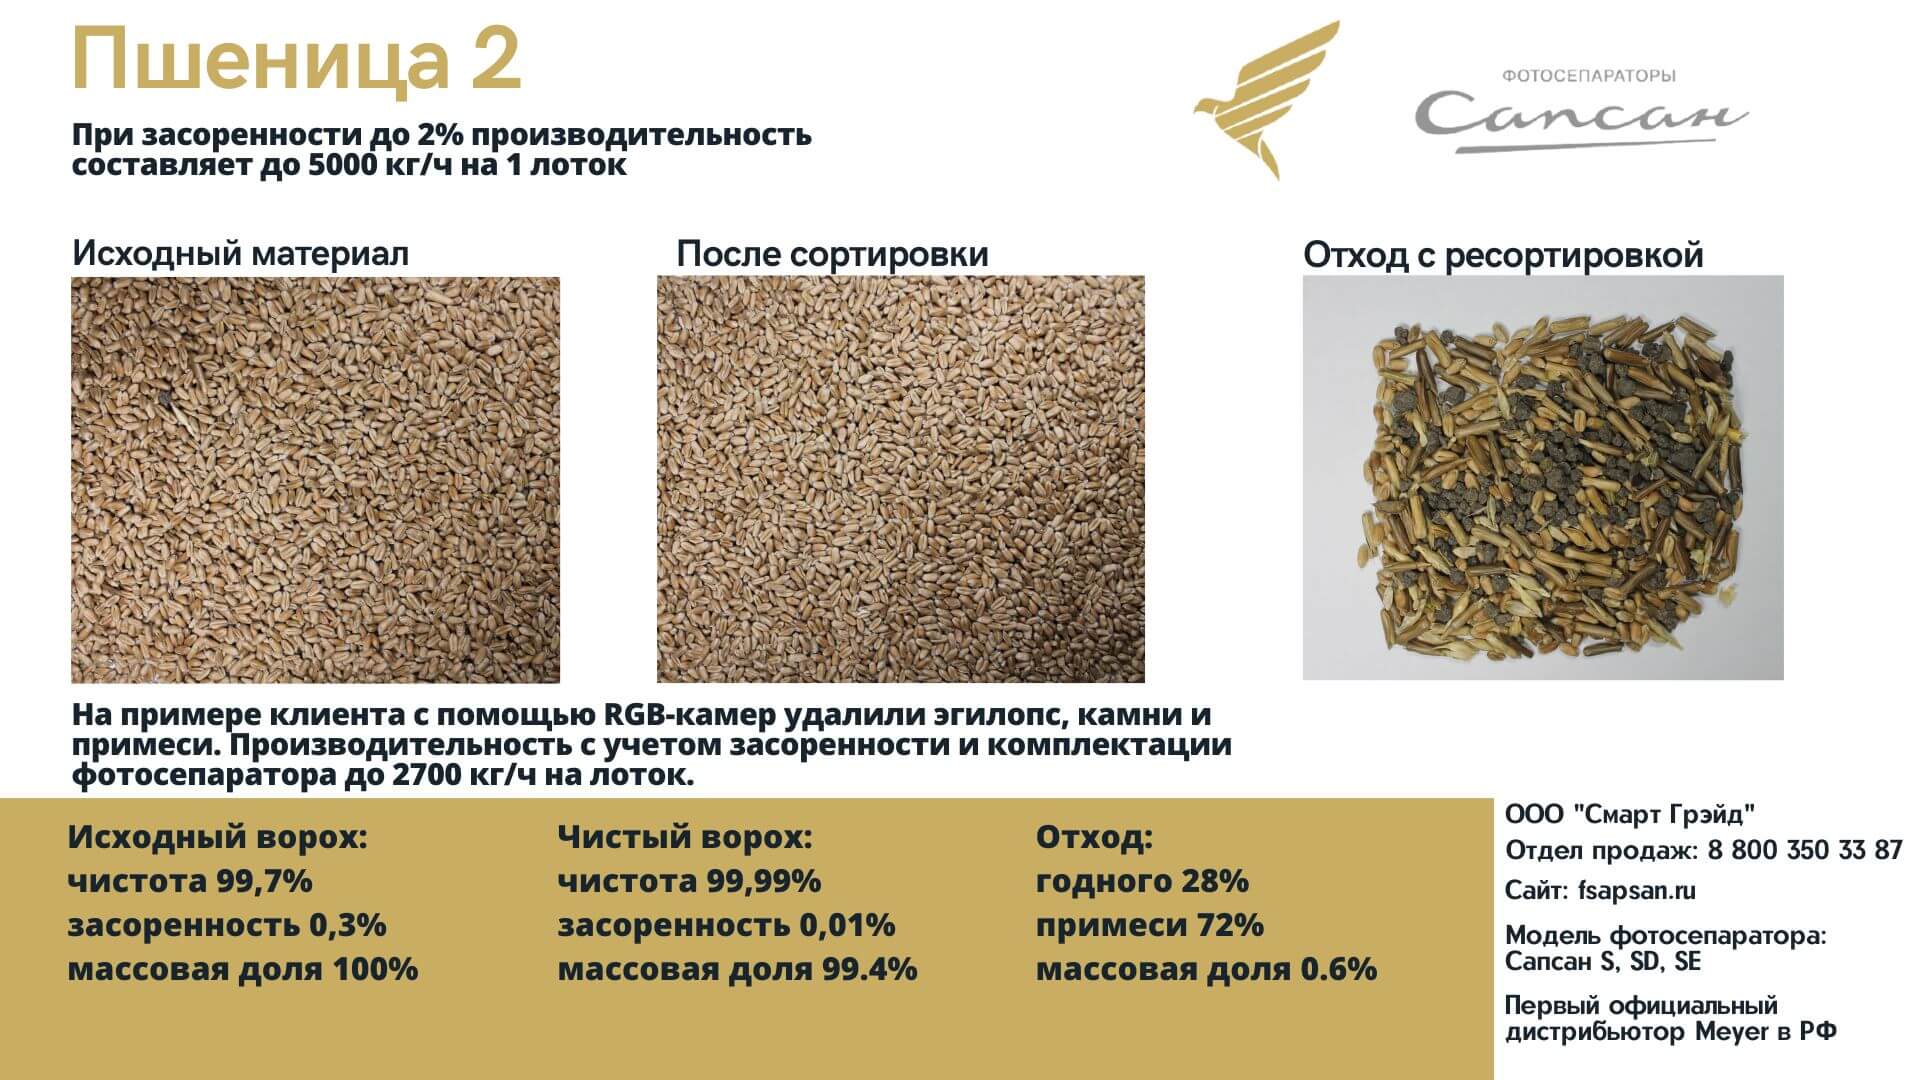 Сортировка и переработка пшеницы